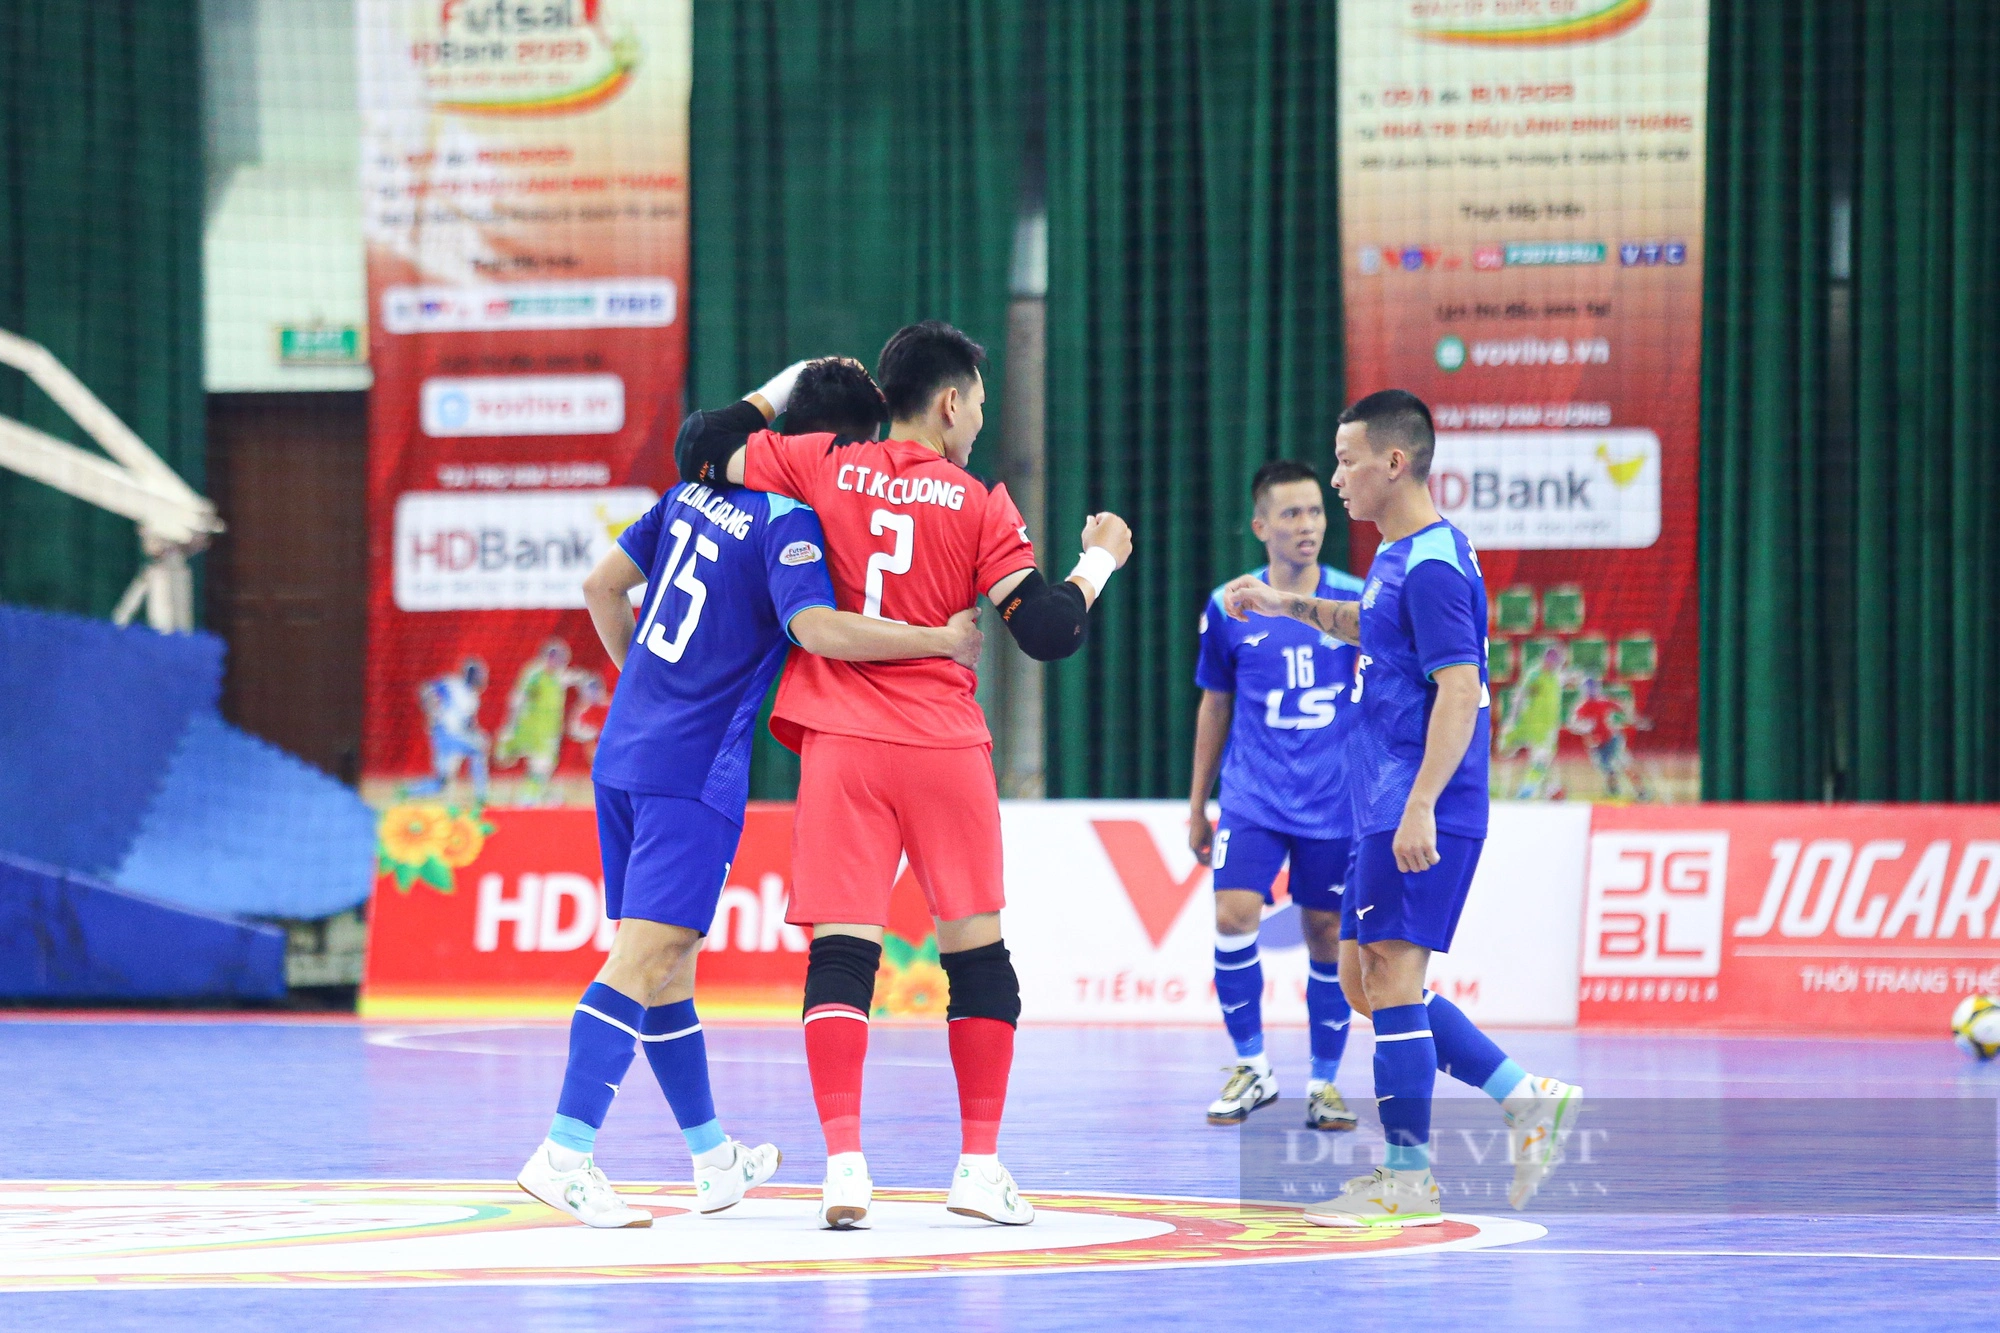 Thái Sơn Nam thắng kịch tính trên chấm luân lưu trong trận “siêu kinh điển” futsal - Ảnh 3.